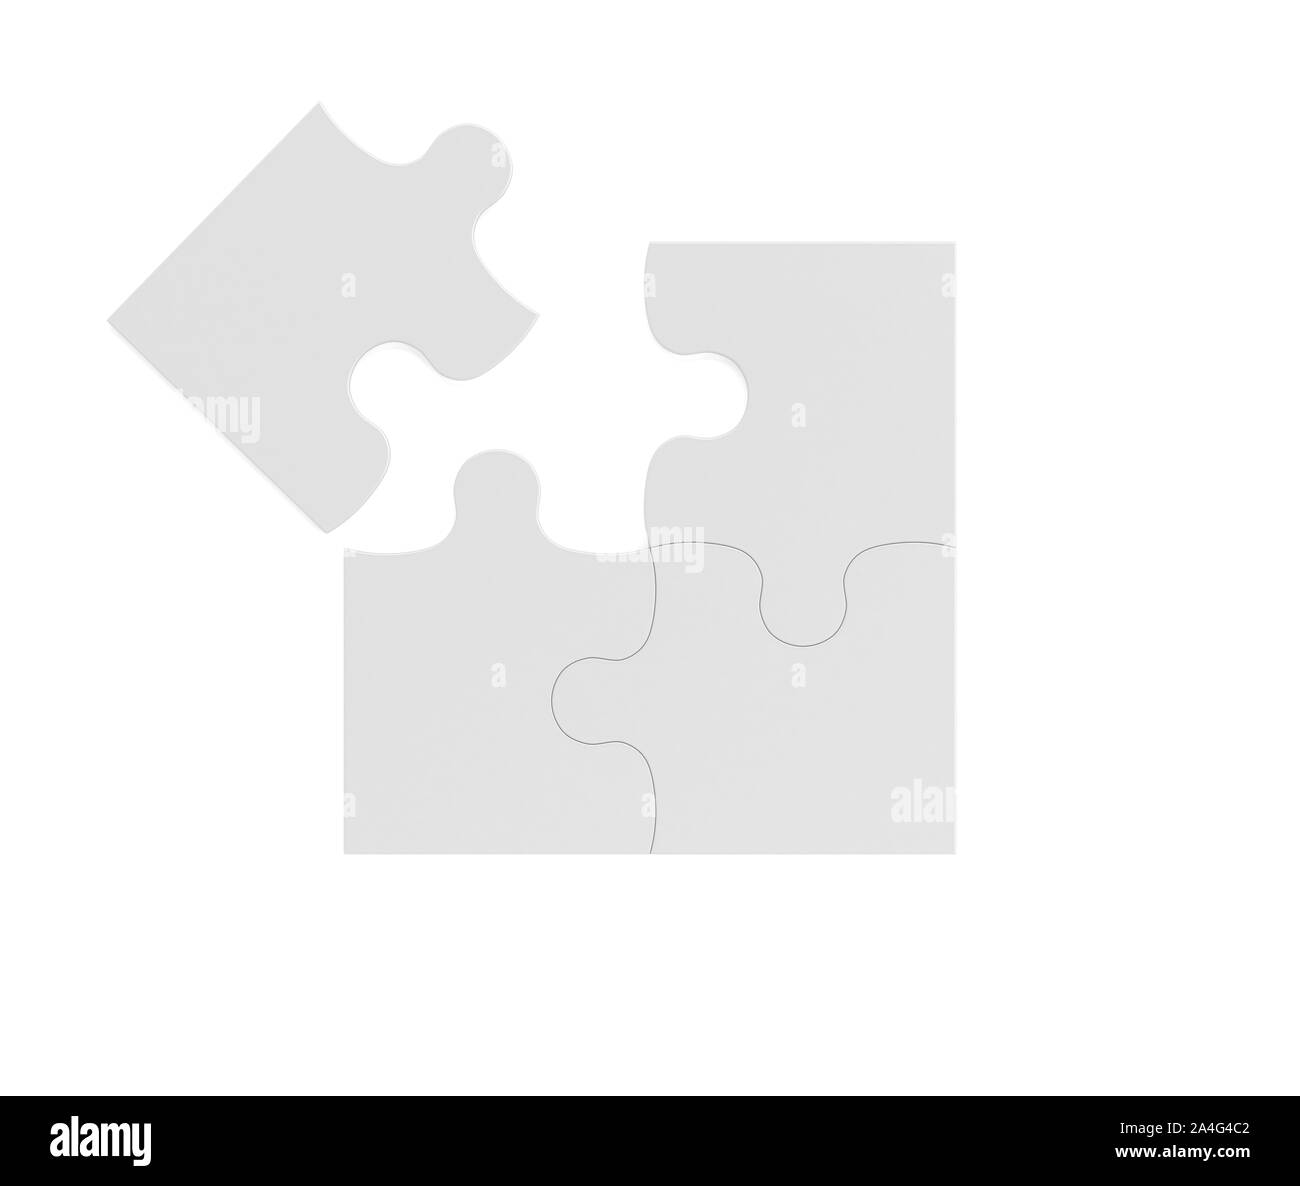 Vetor de Icono plano corazon dos piezas puzzle color en fondo blanco do  Stock